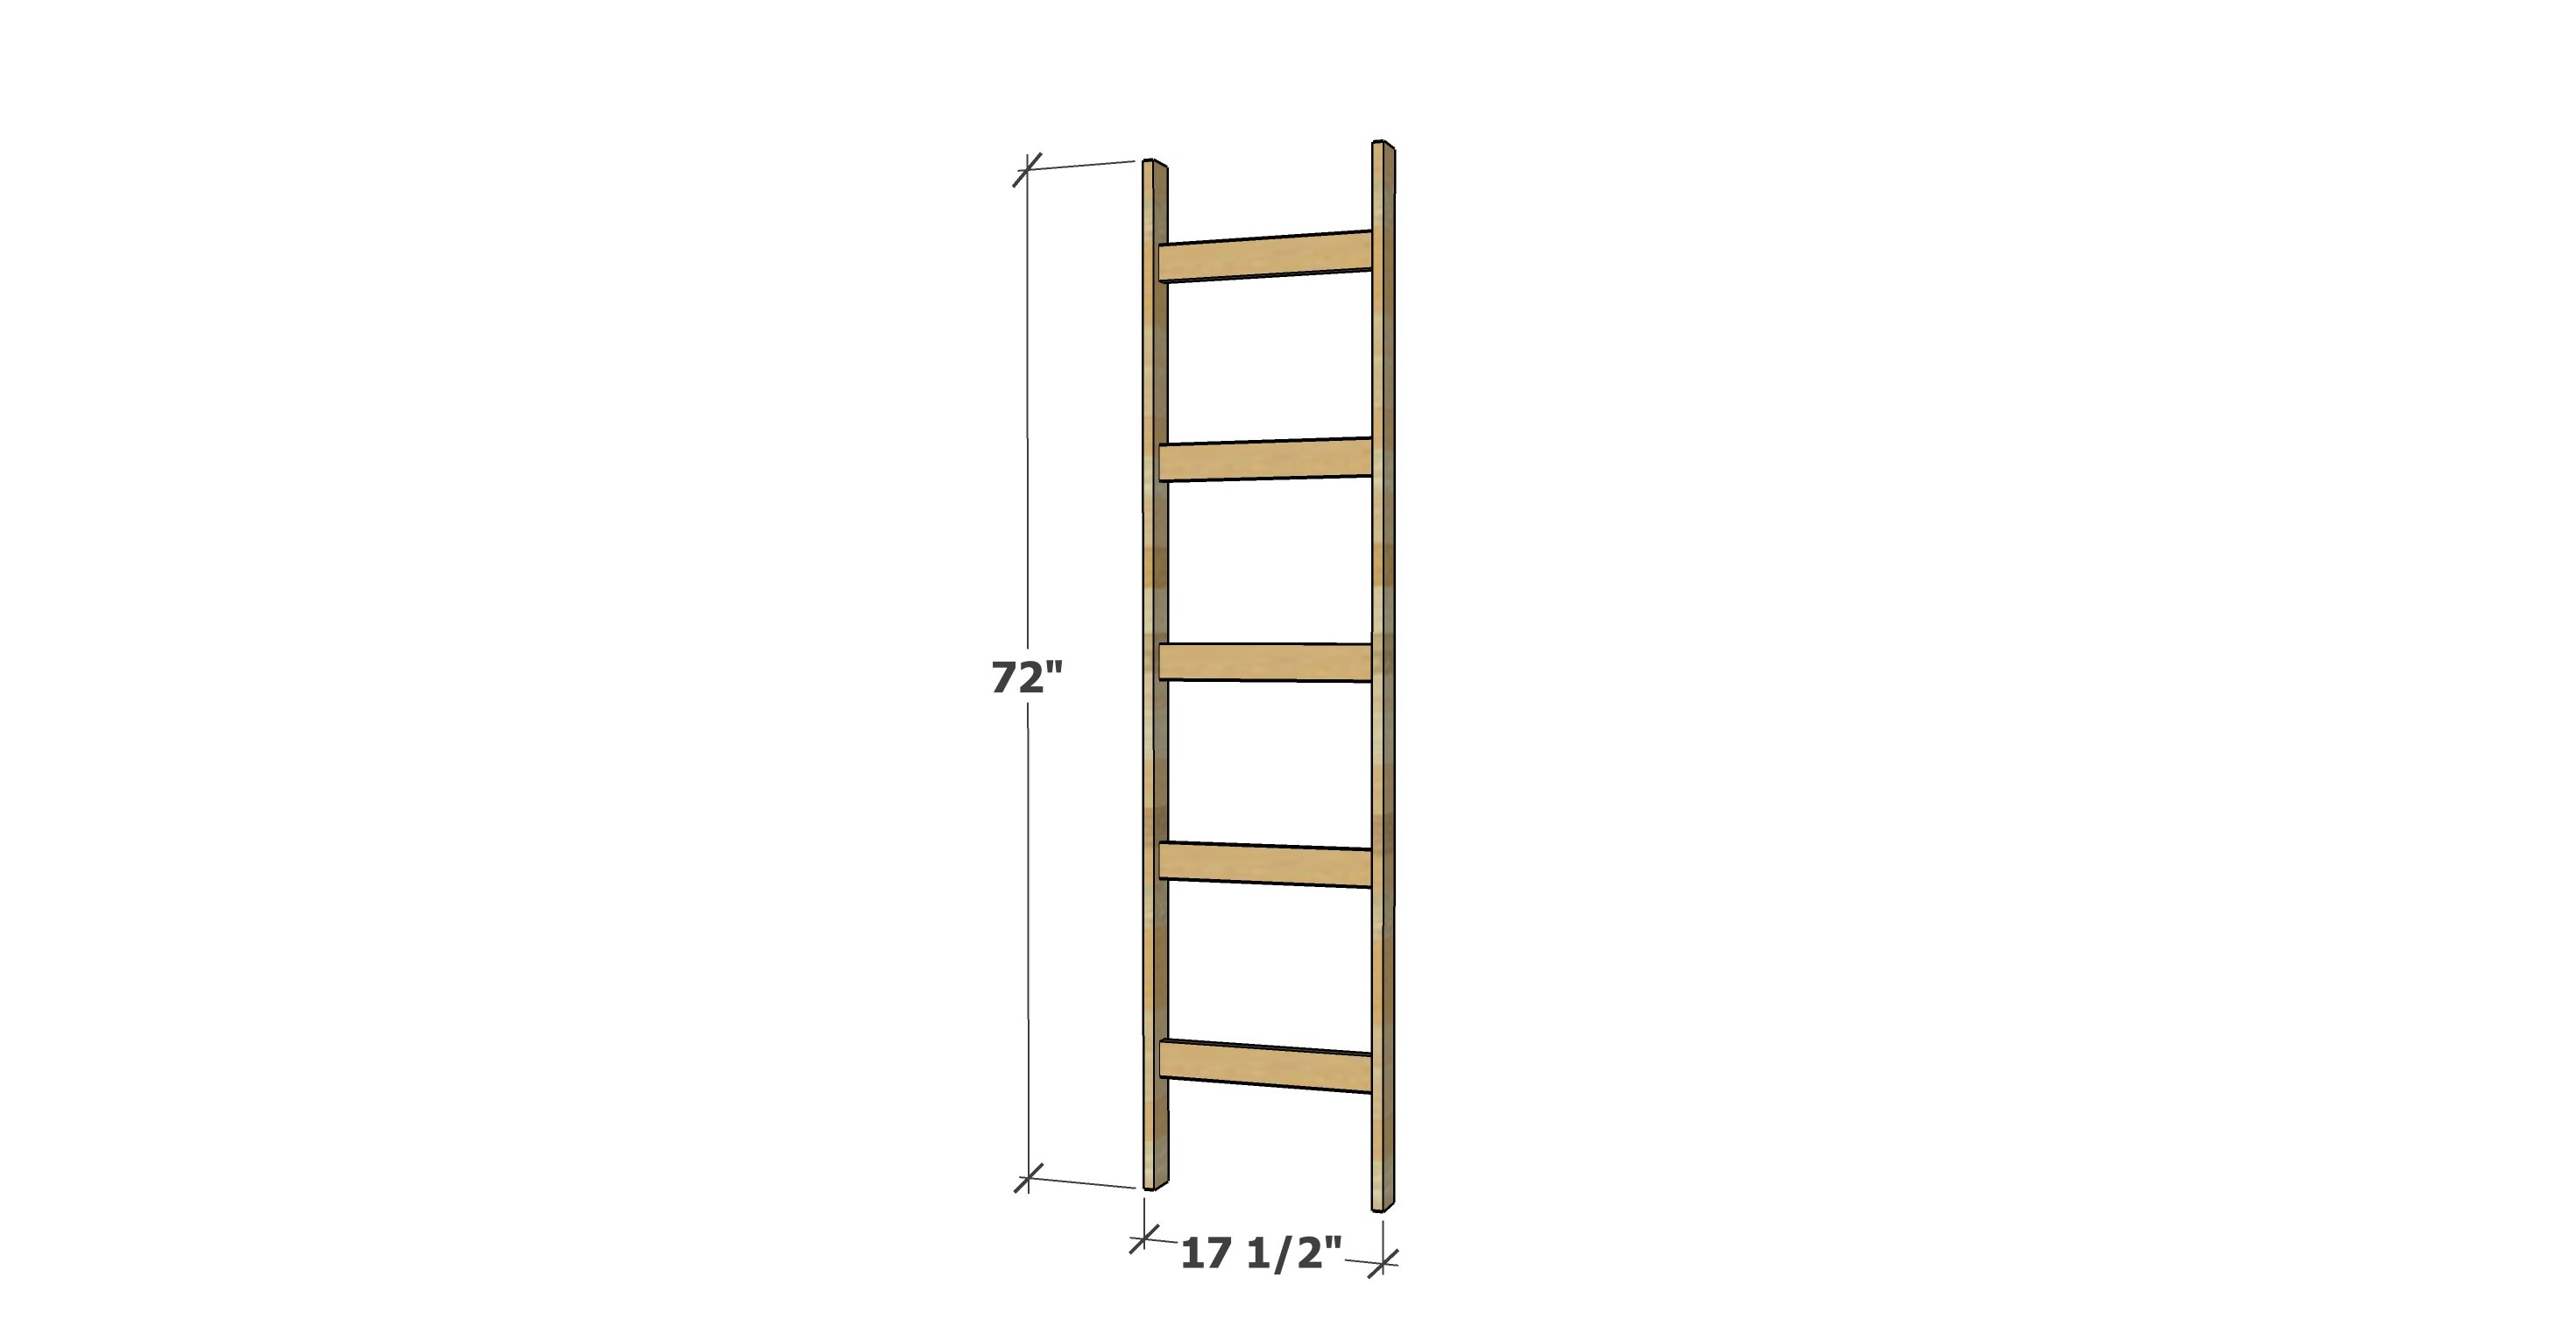 blanket ladder dimensions